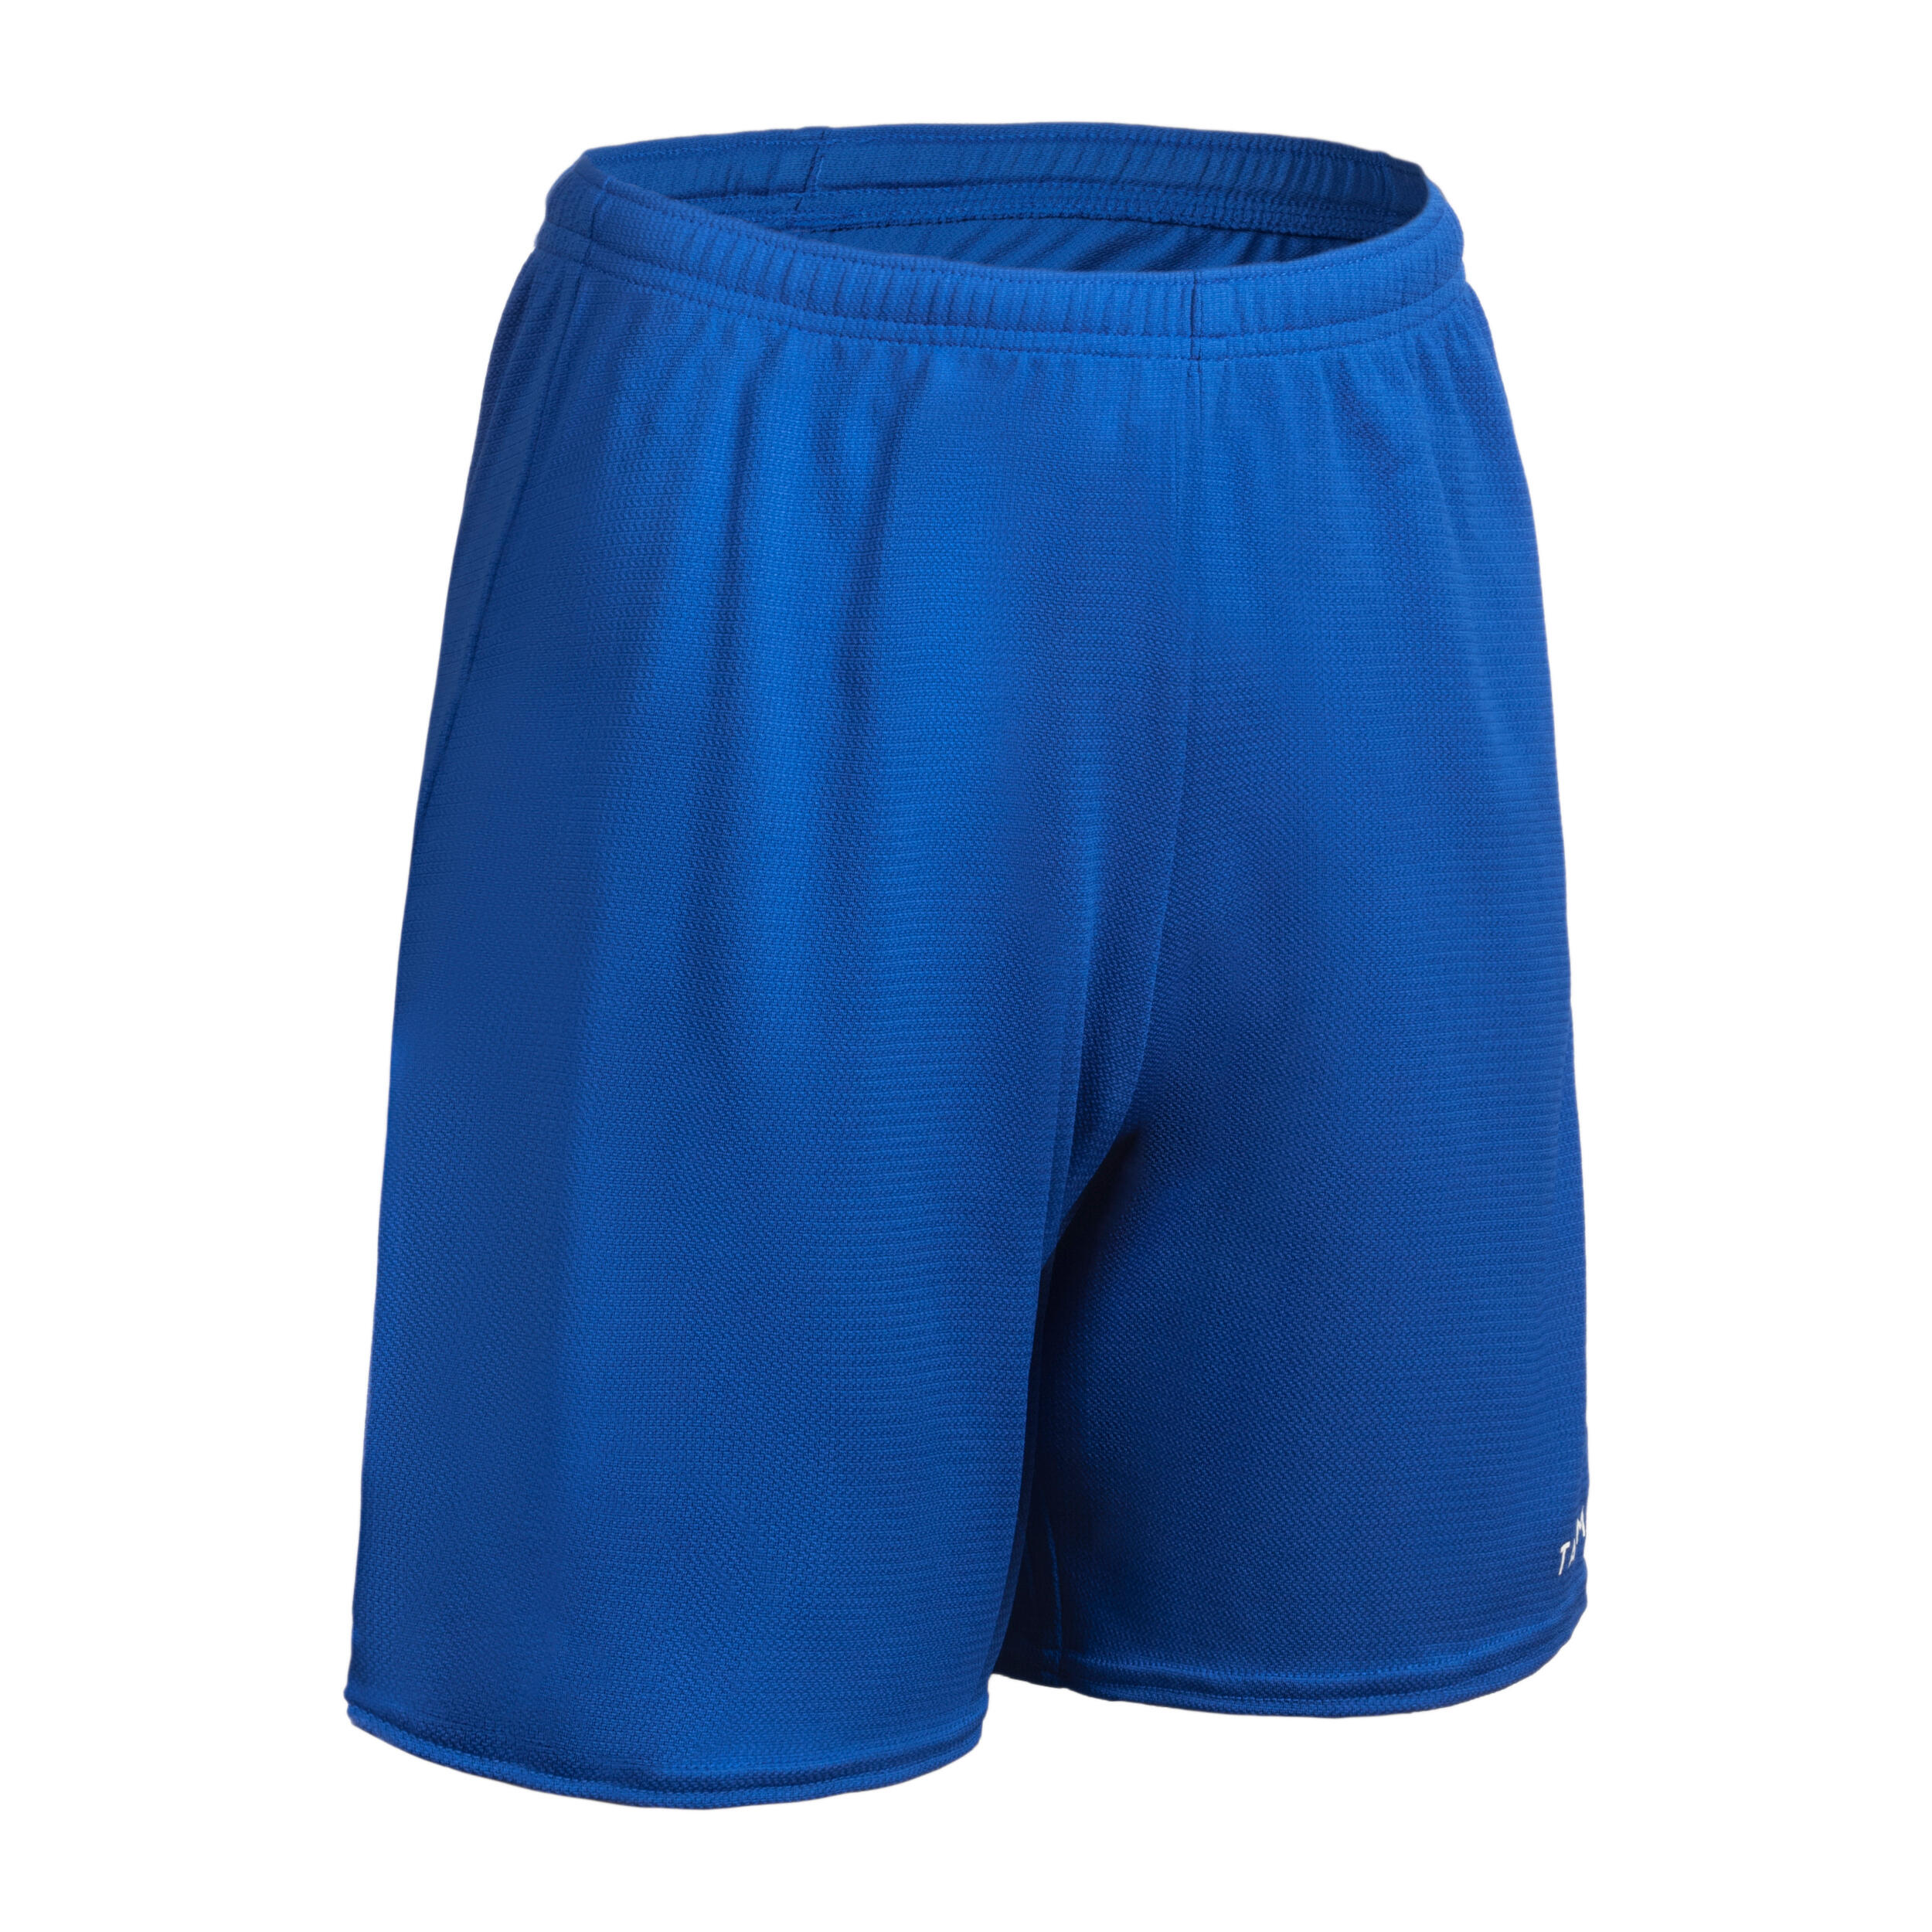 Señoras Pantalones Cortos De Niño Azul siguiente tamaños de 6-24